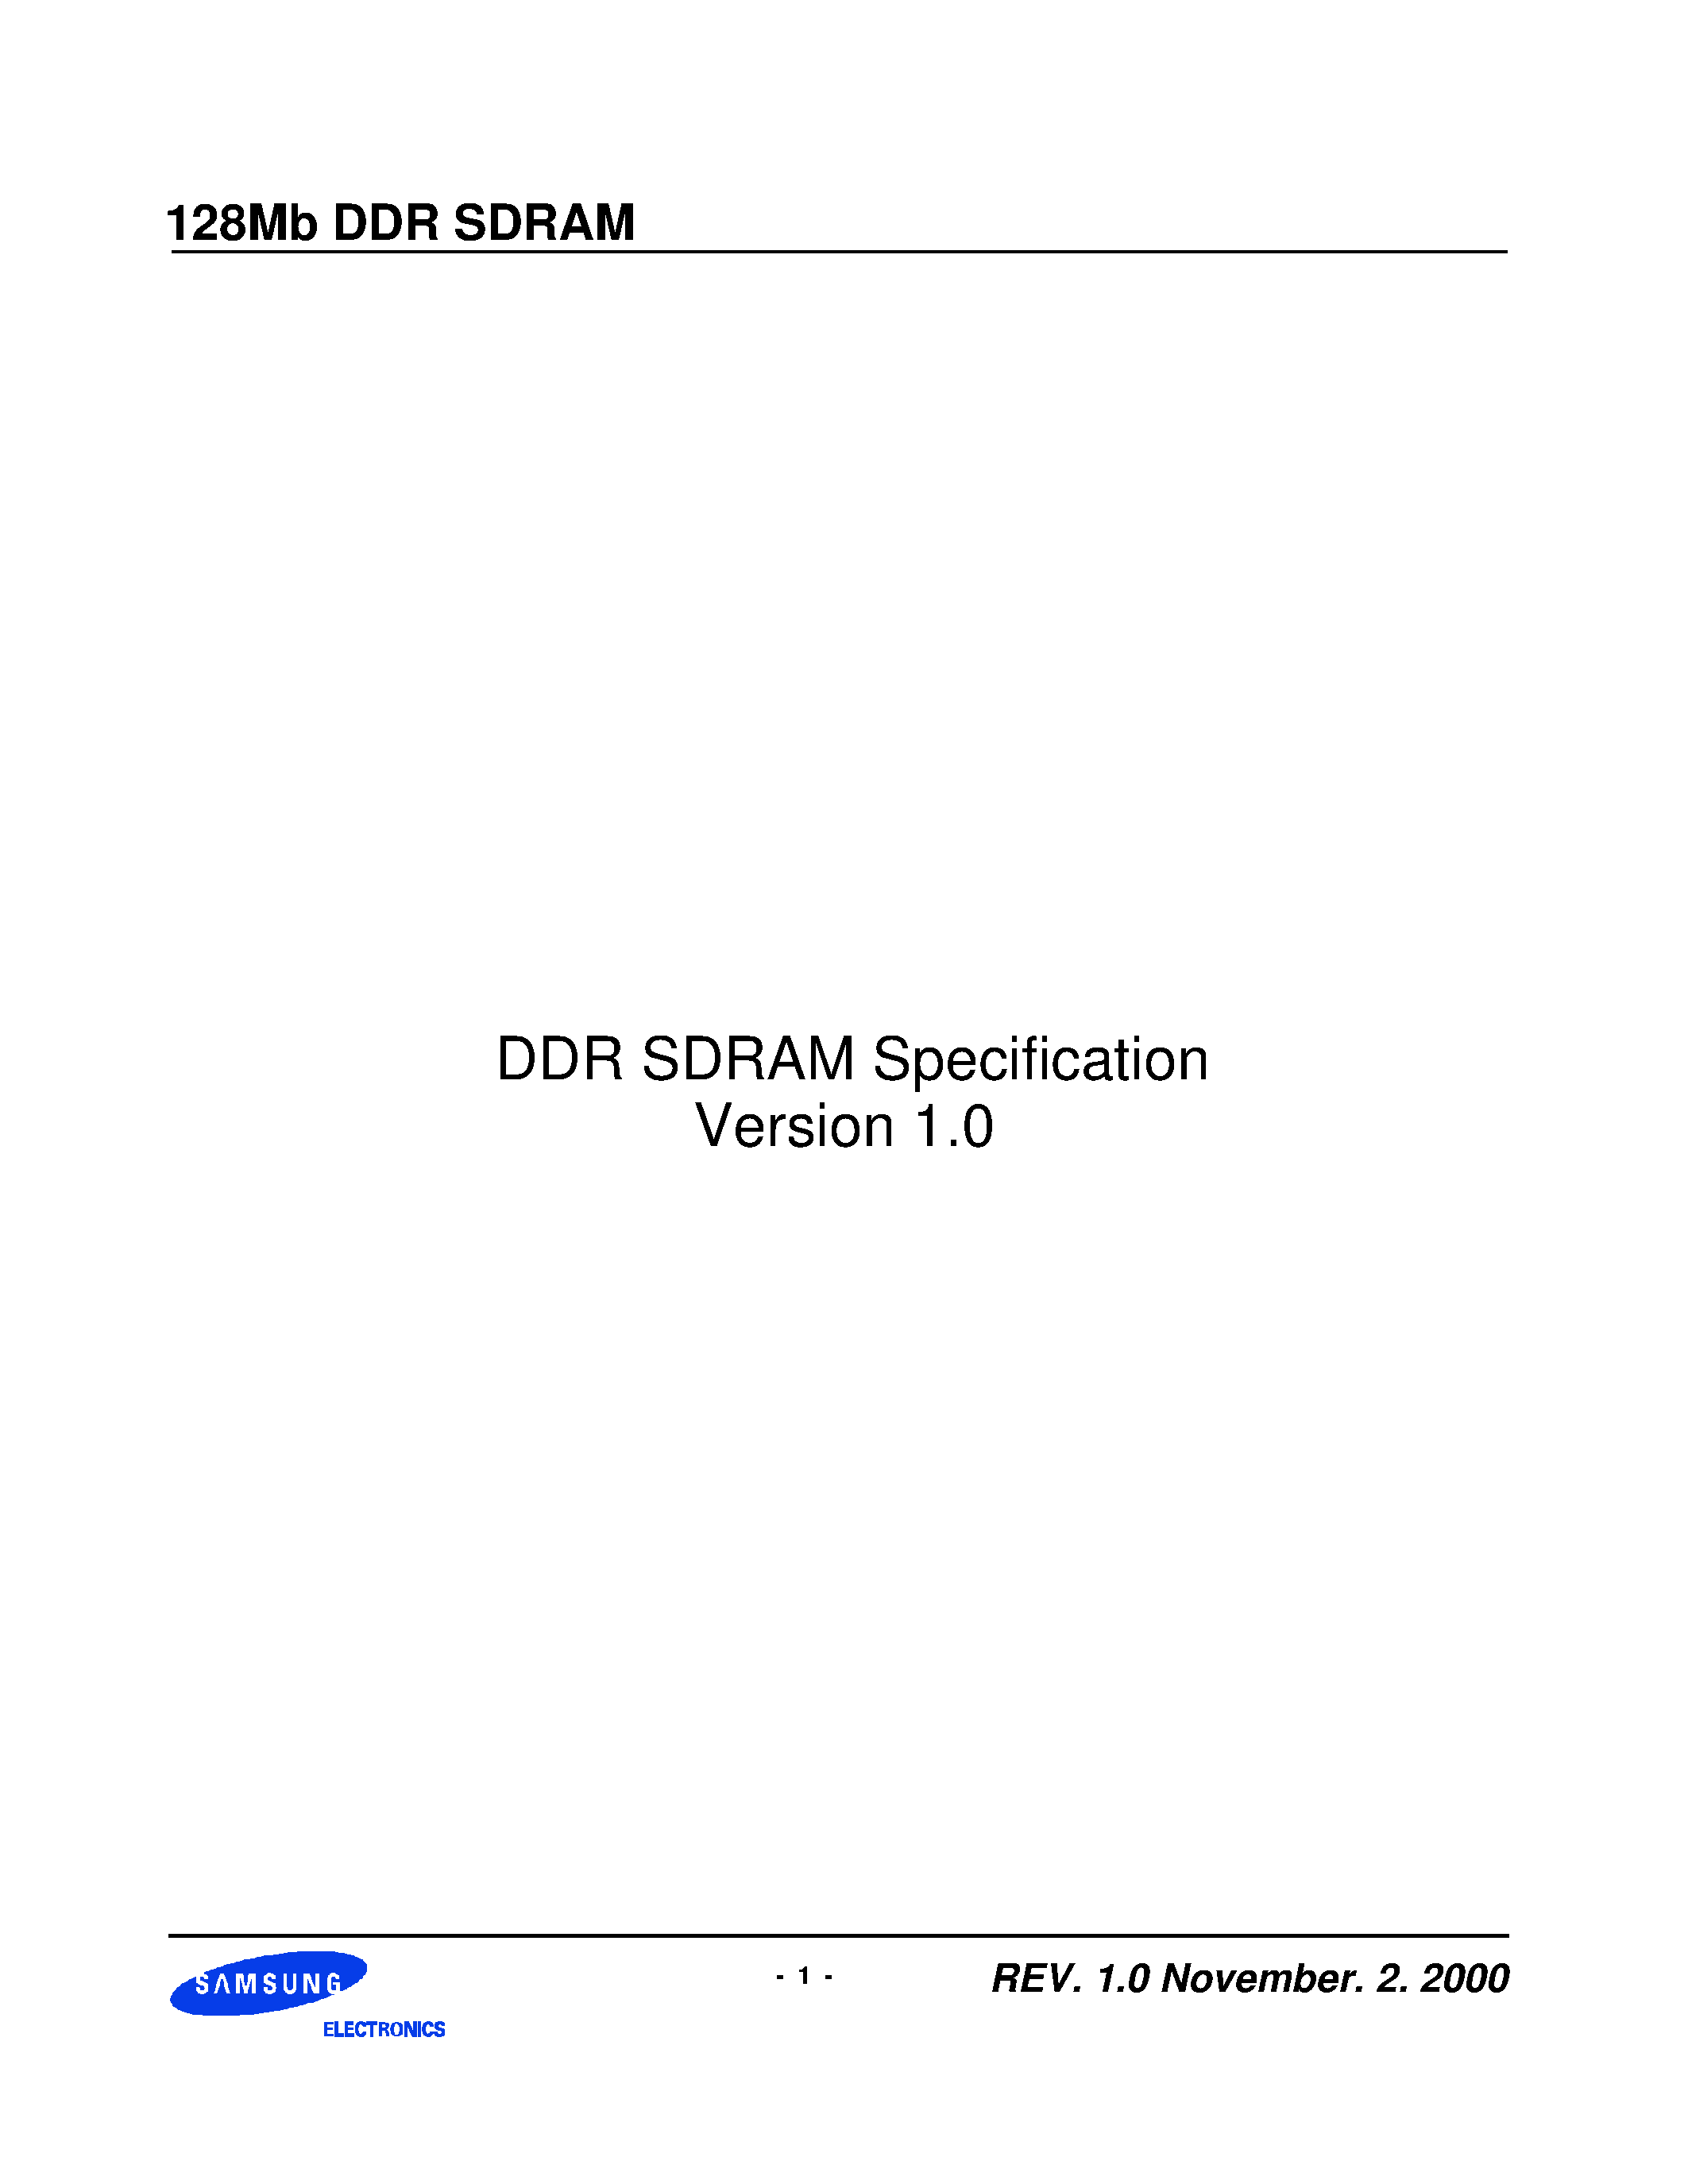 Даташит KM44L32031BT-G(L)Z - DDR SDRAM Specification Version 1.0 страница 1